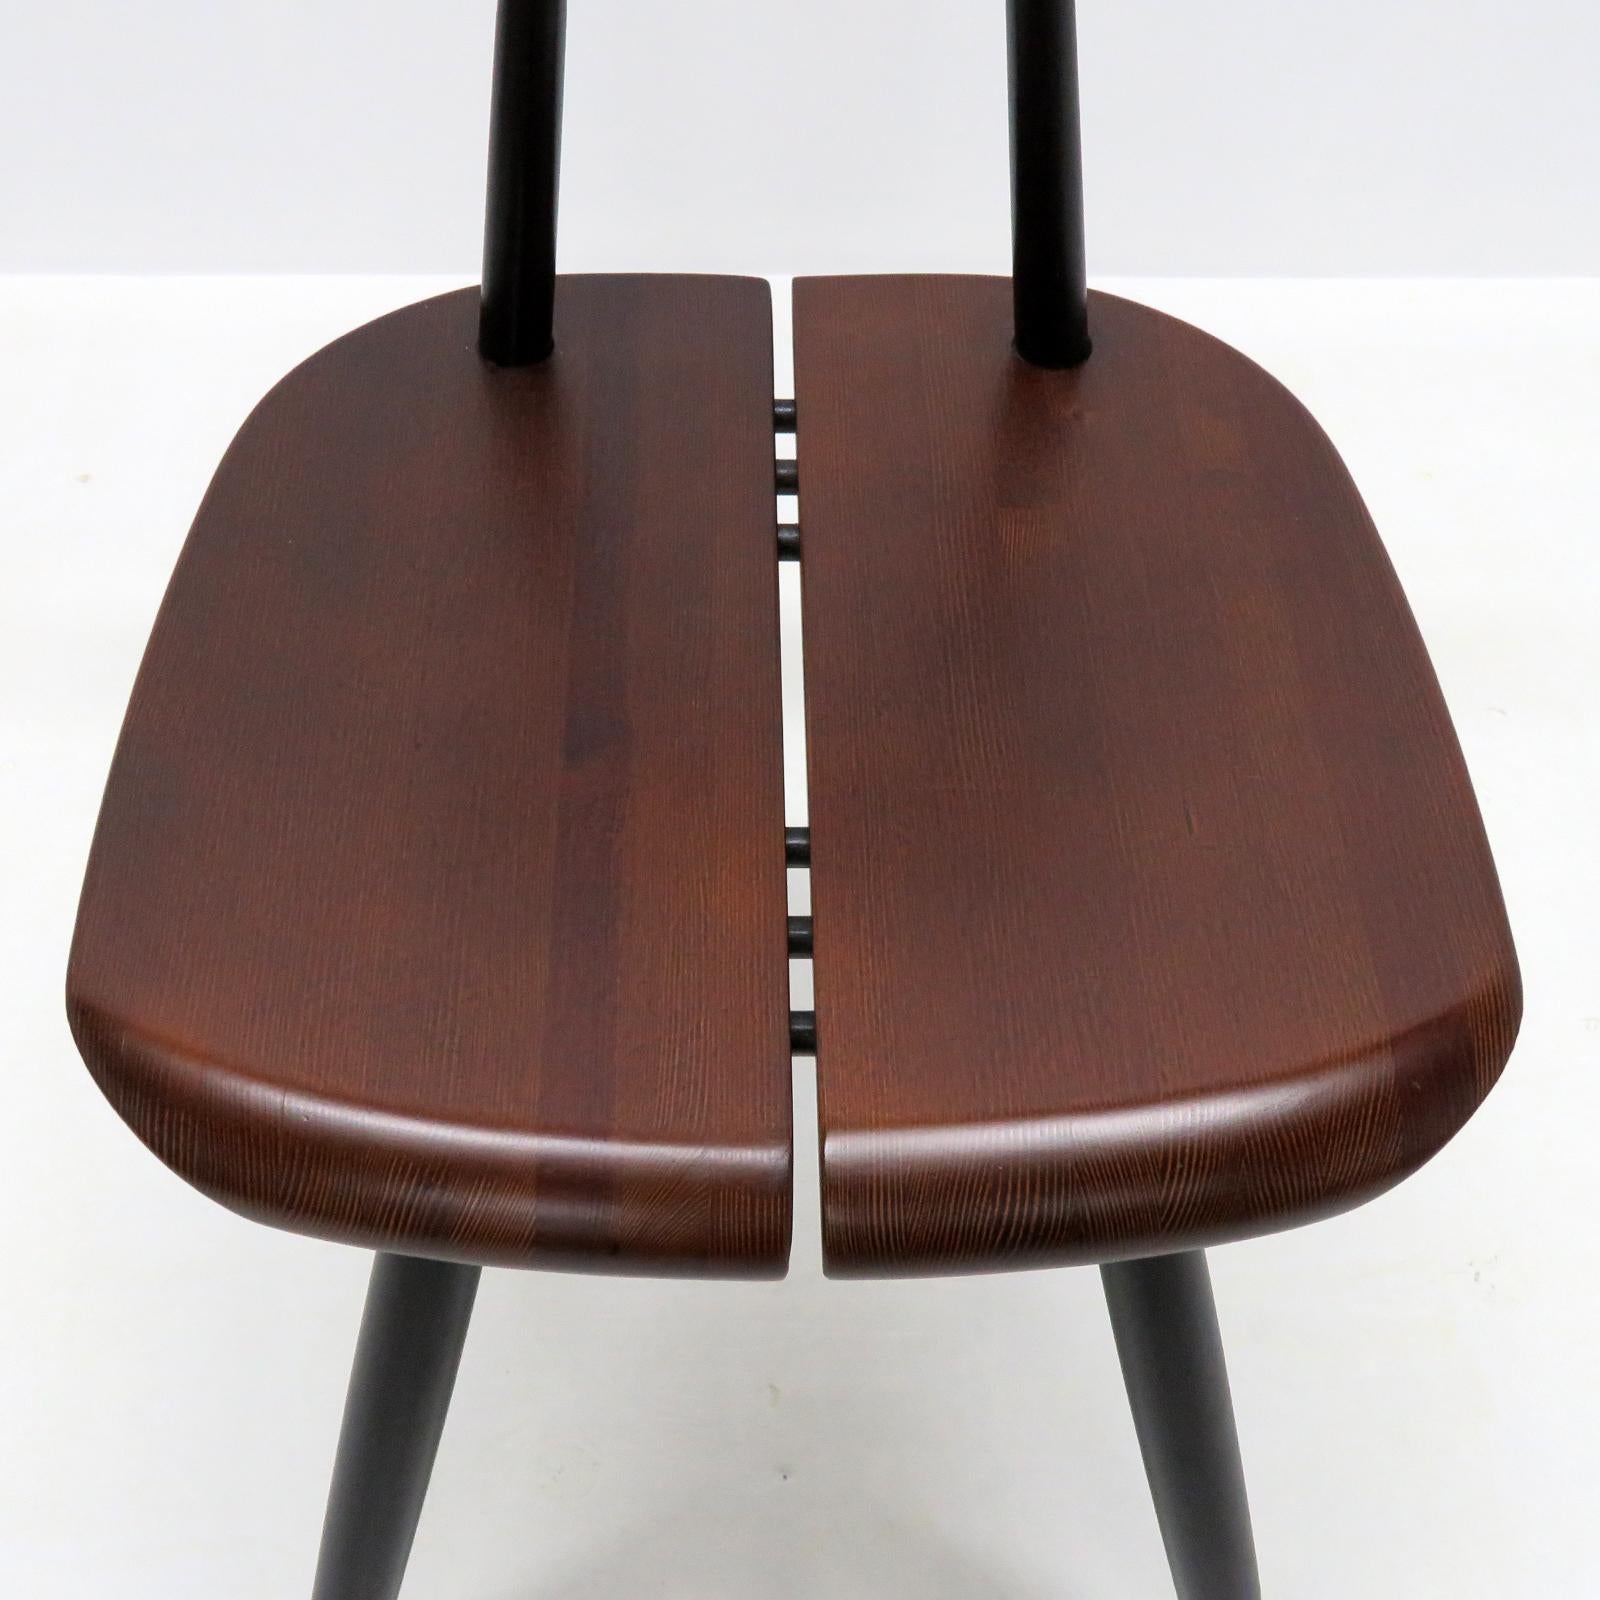 Scandinavian Modern Ilmari Tapiovaara, ‘Pirkka’ Chairs, 1955